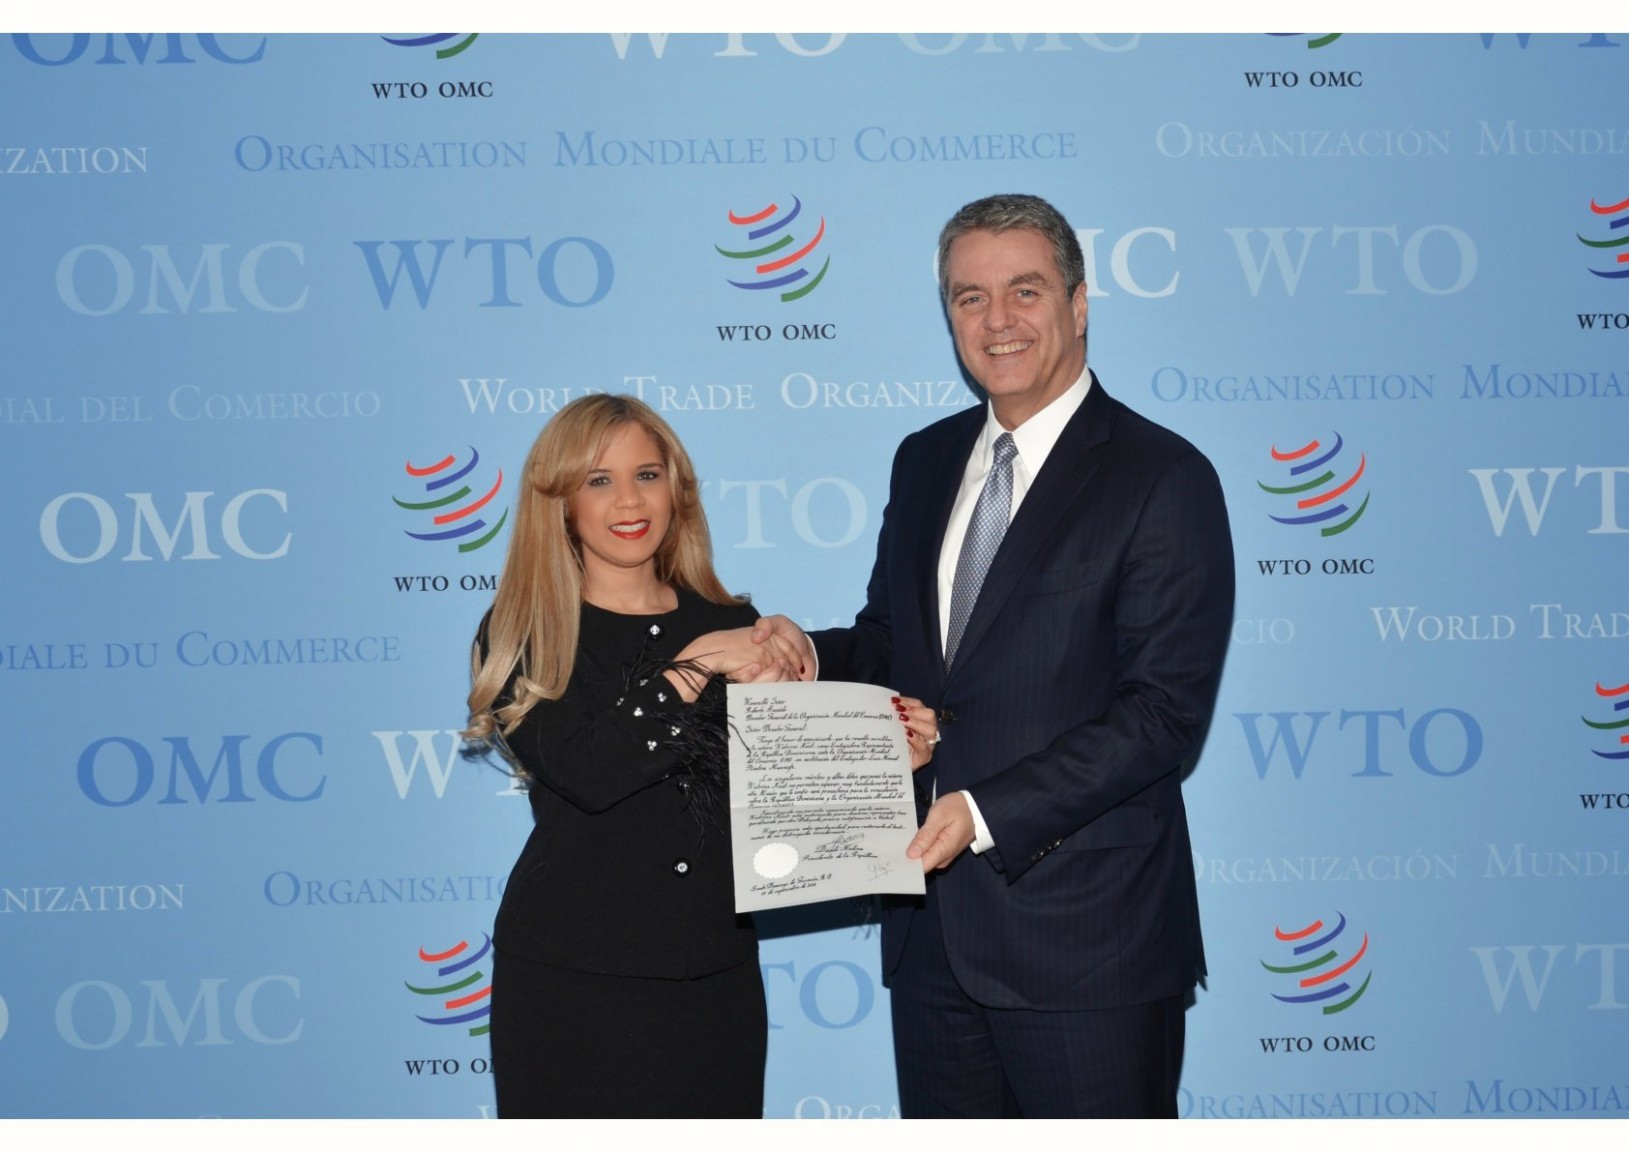 REPÚBLICA DOMINICANA: Embajadora Katrina Naut presenta cartas credenciales ante director general Organización Mundial del Comercio